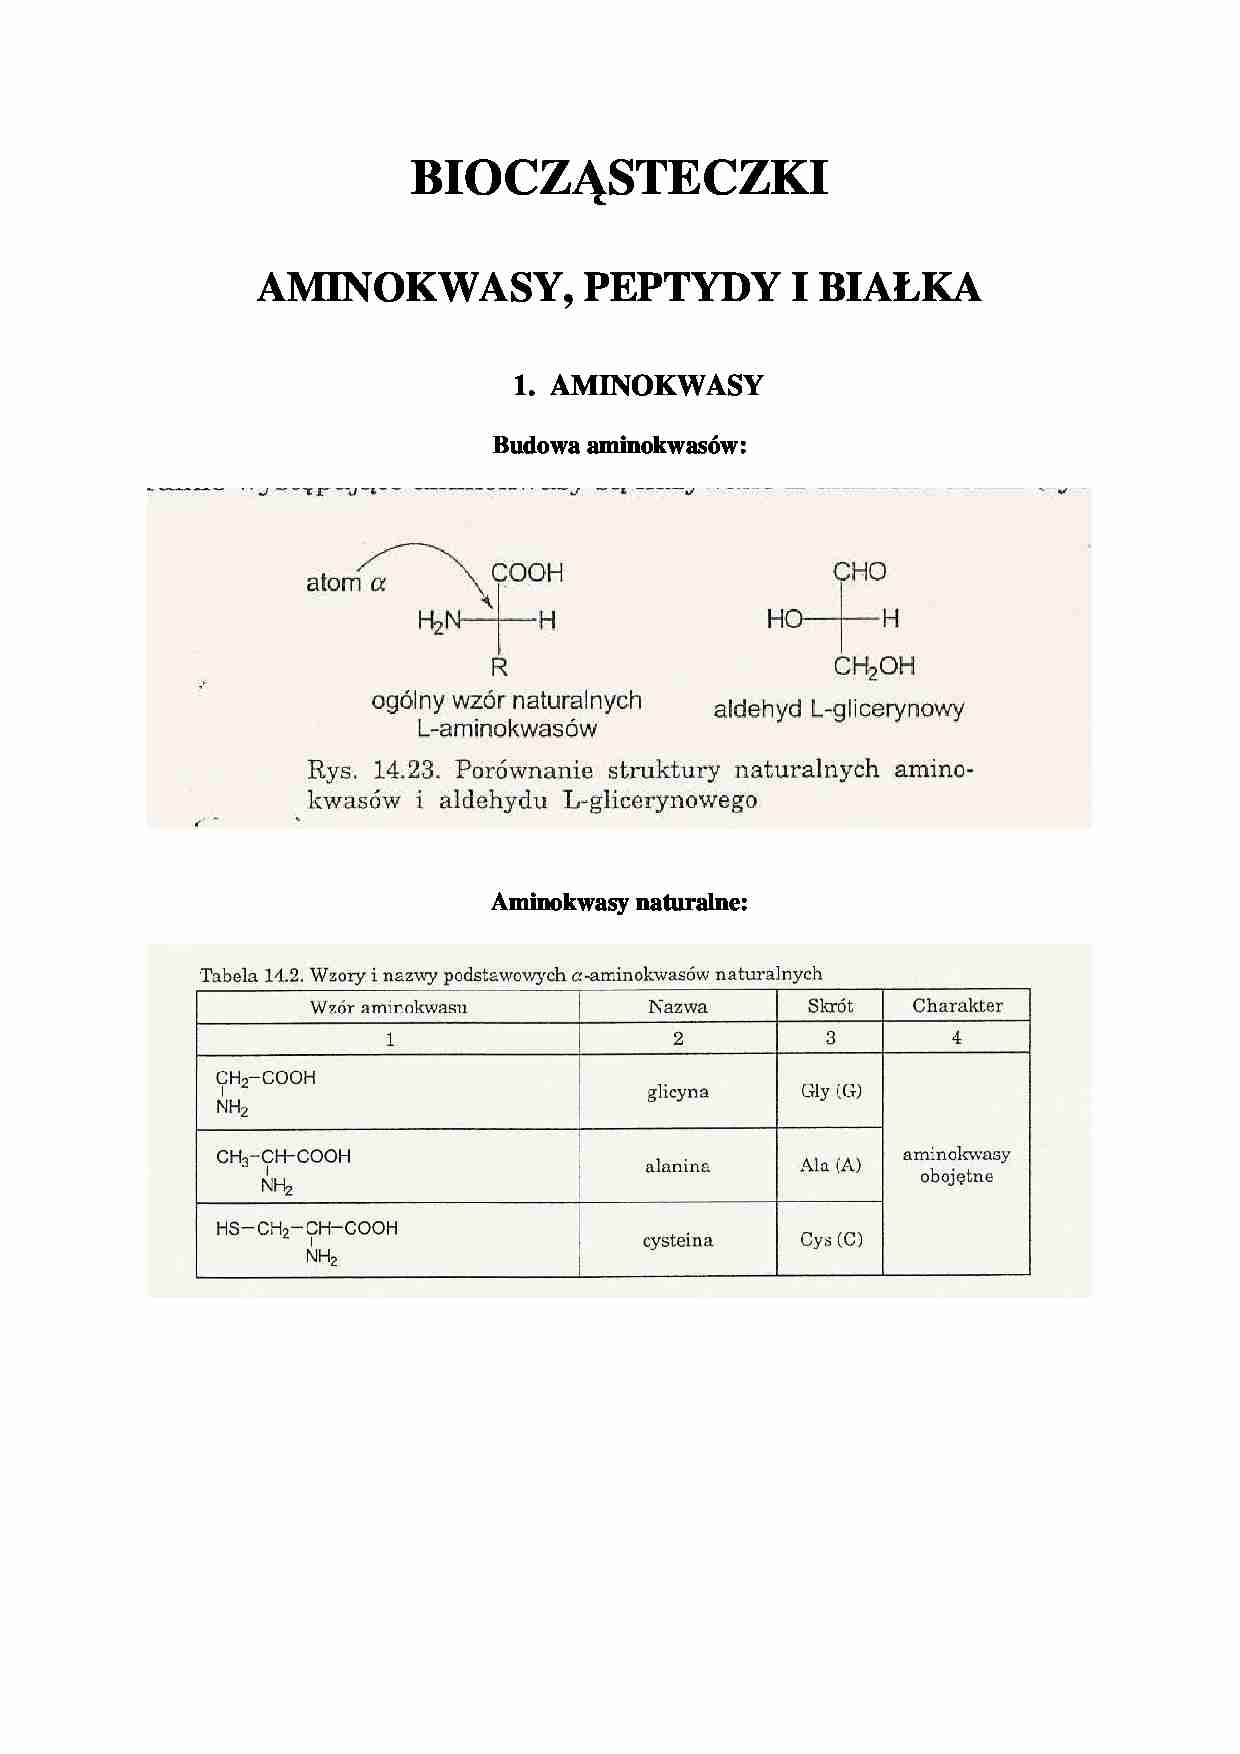 Aminokwasy, peptydy i białka - omówienie  - strona 1